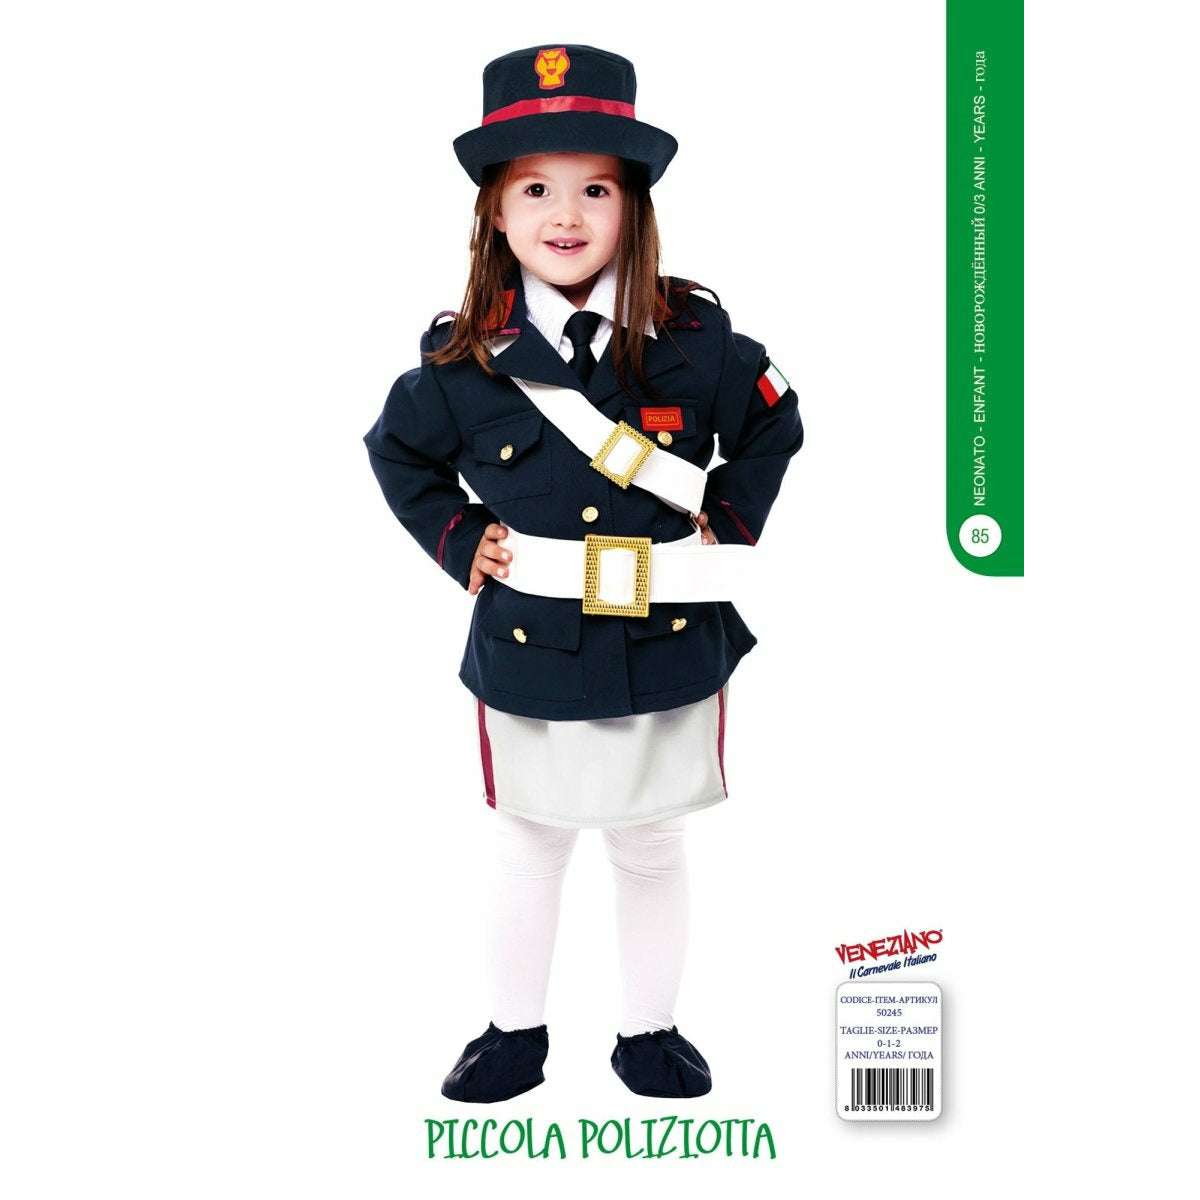 Piccola Poliziotta - Mstore016 - Carnevale neonata - Veneziano